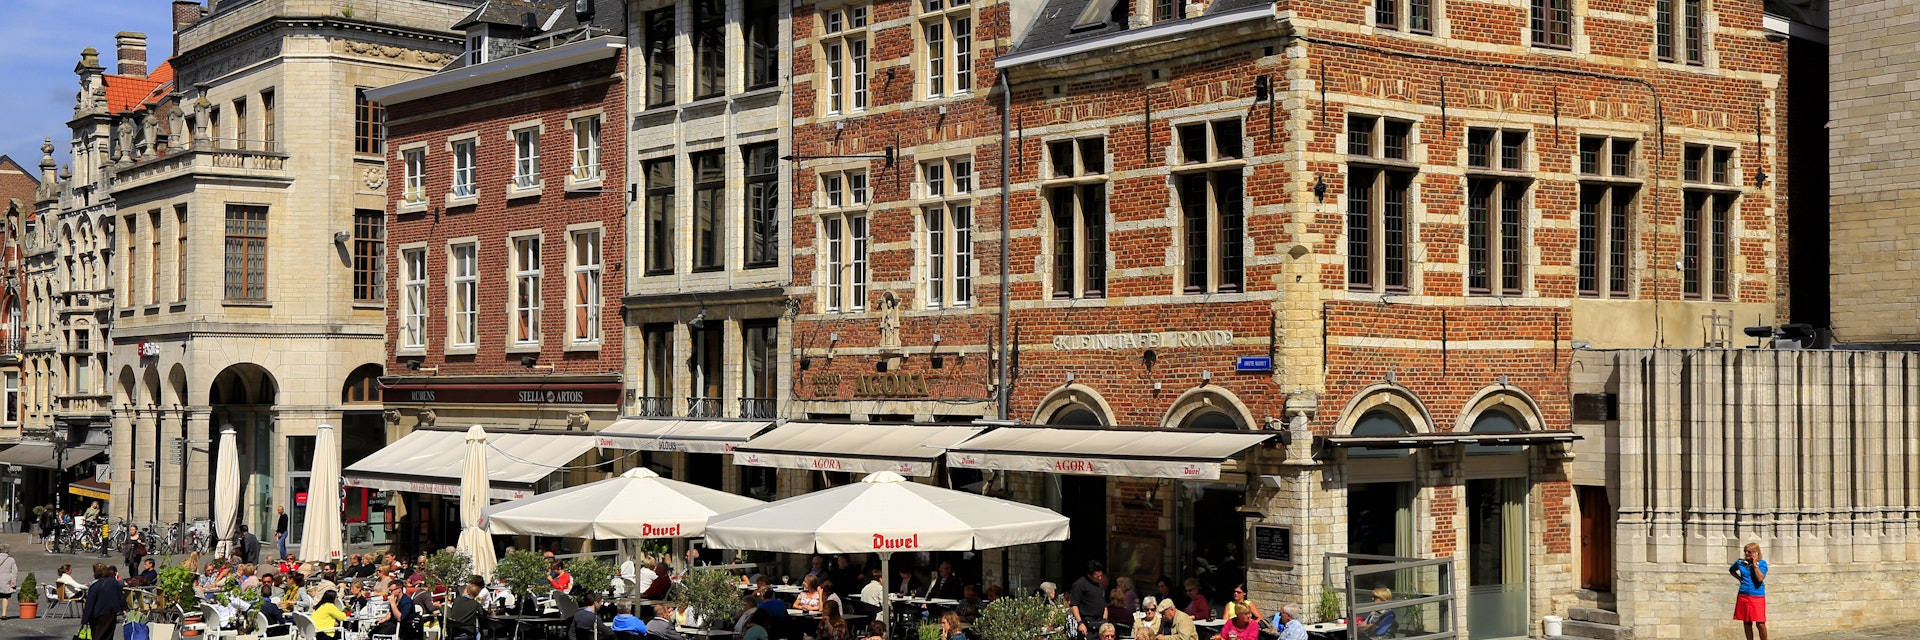 The Grote Markt of Leuven, Belgium